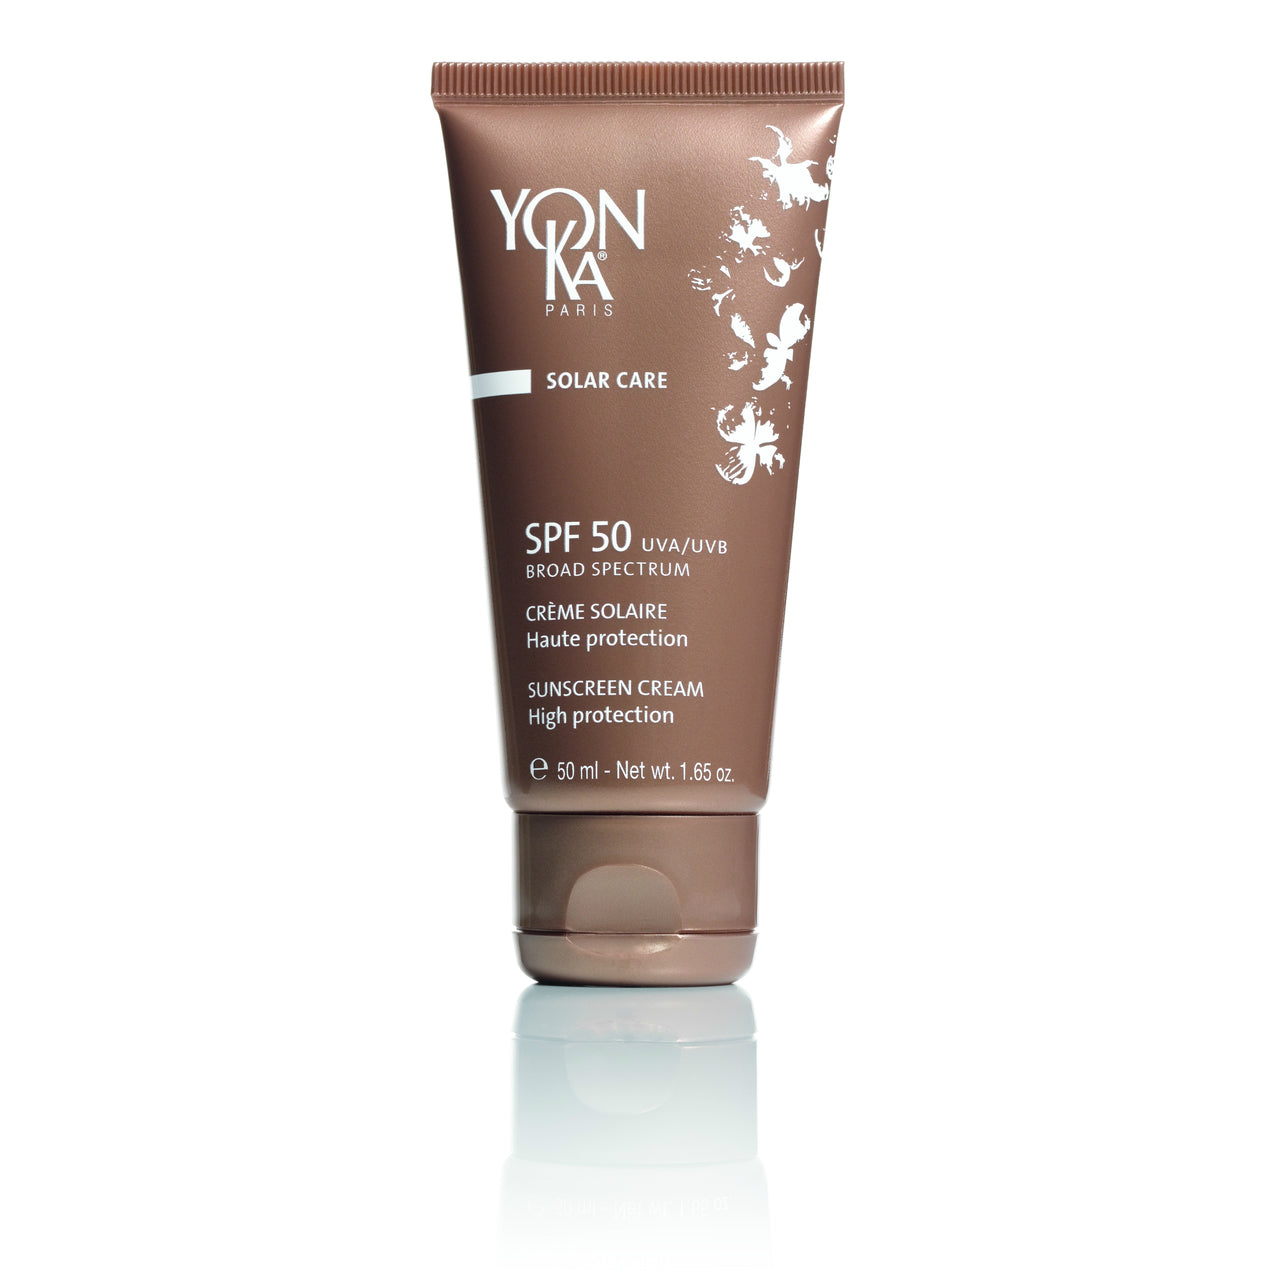 Yon-ka Solar Care Sunscreen Cream SPF 50 1.65 oz